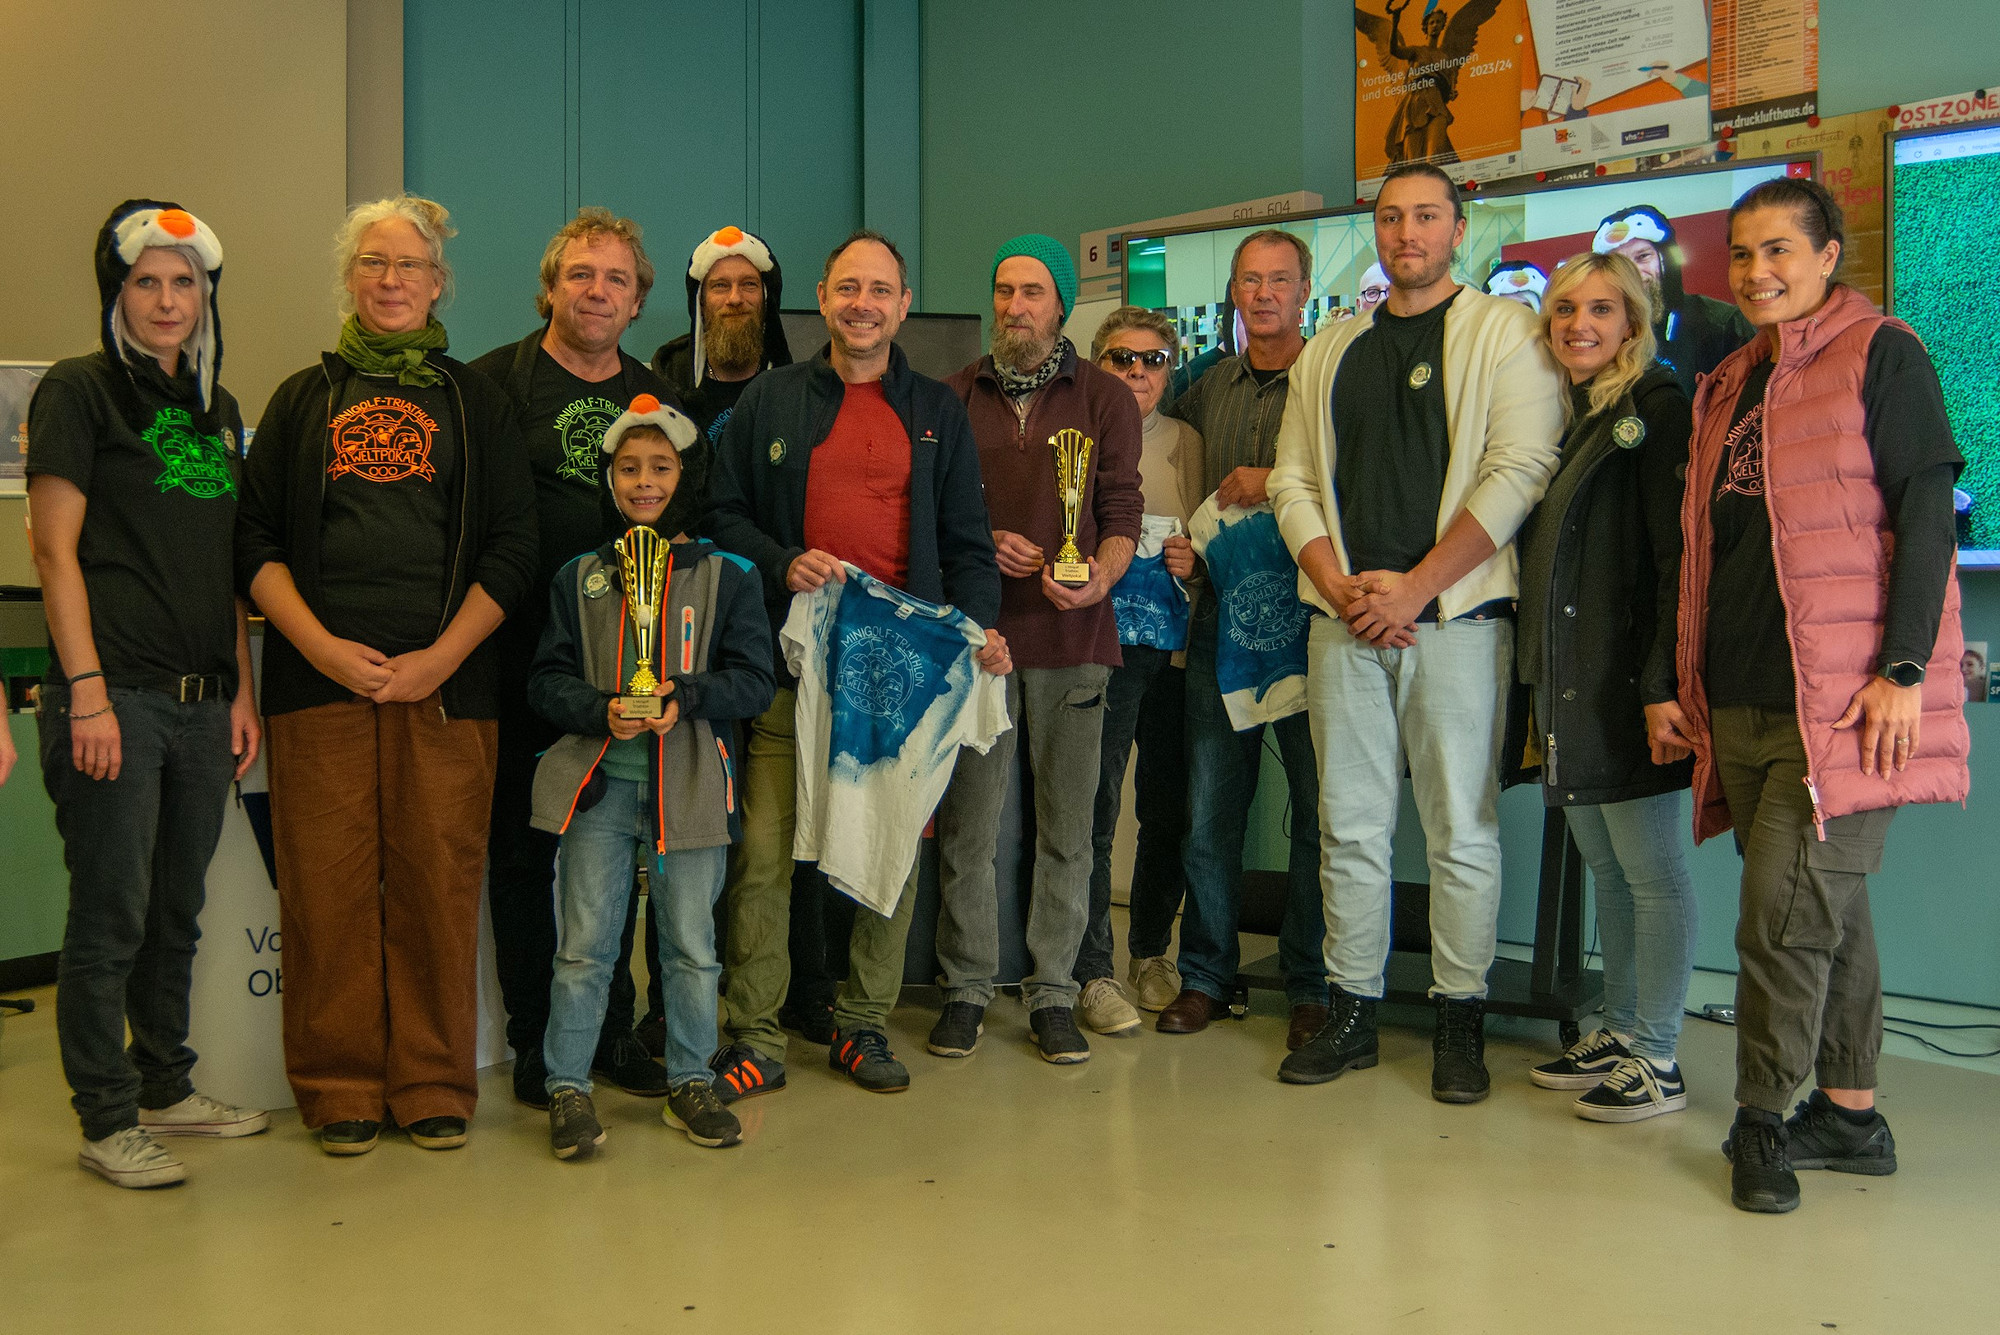 Minigolf-Triathlon-Weltpokal feiert erfolgreiche Premiere in der Oberhausener City!